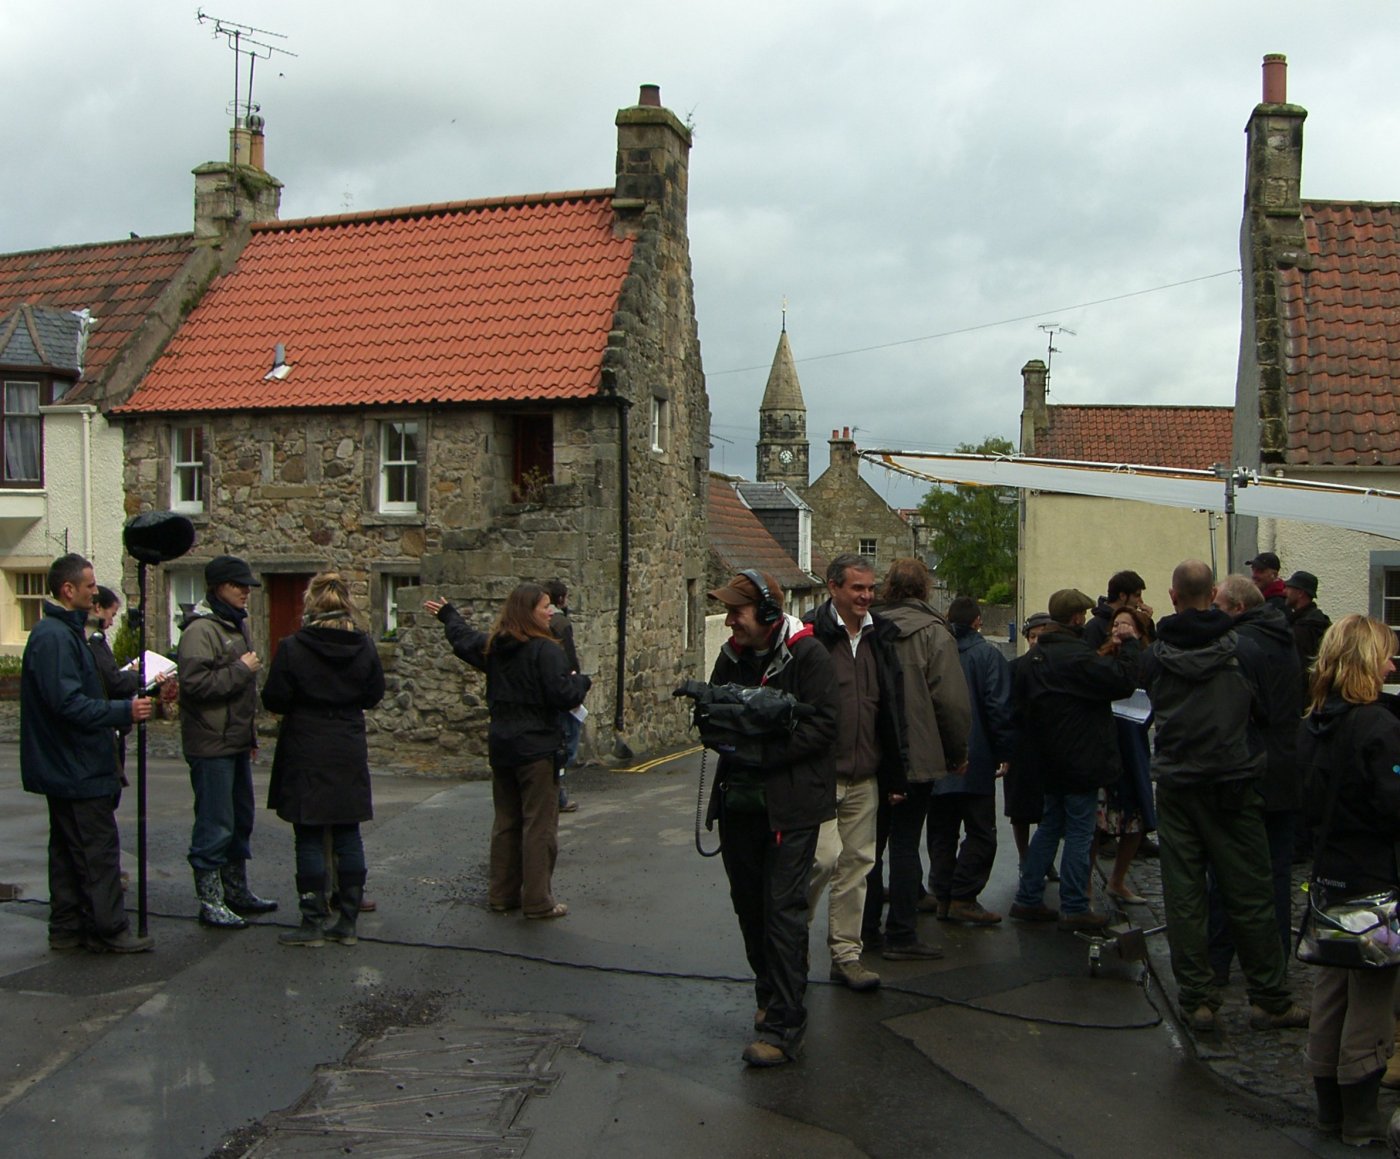 Film crew in a Scottish village